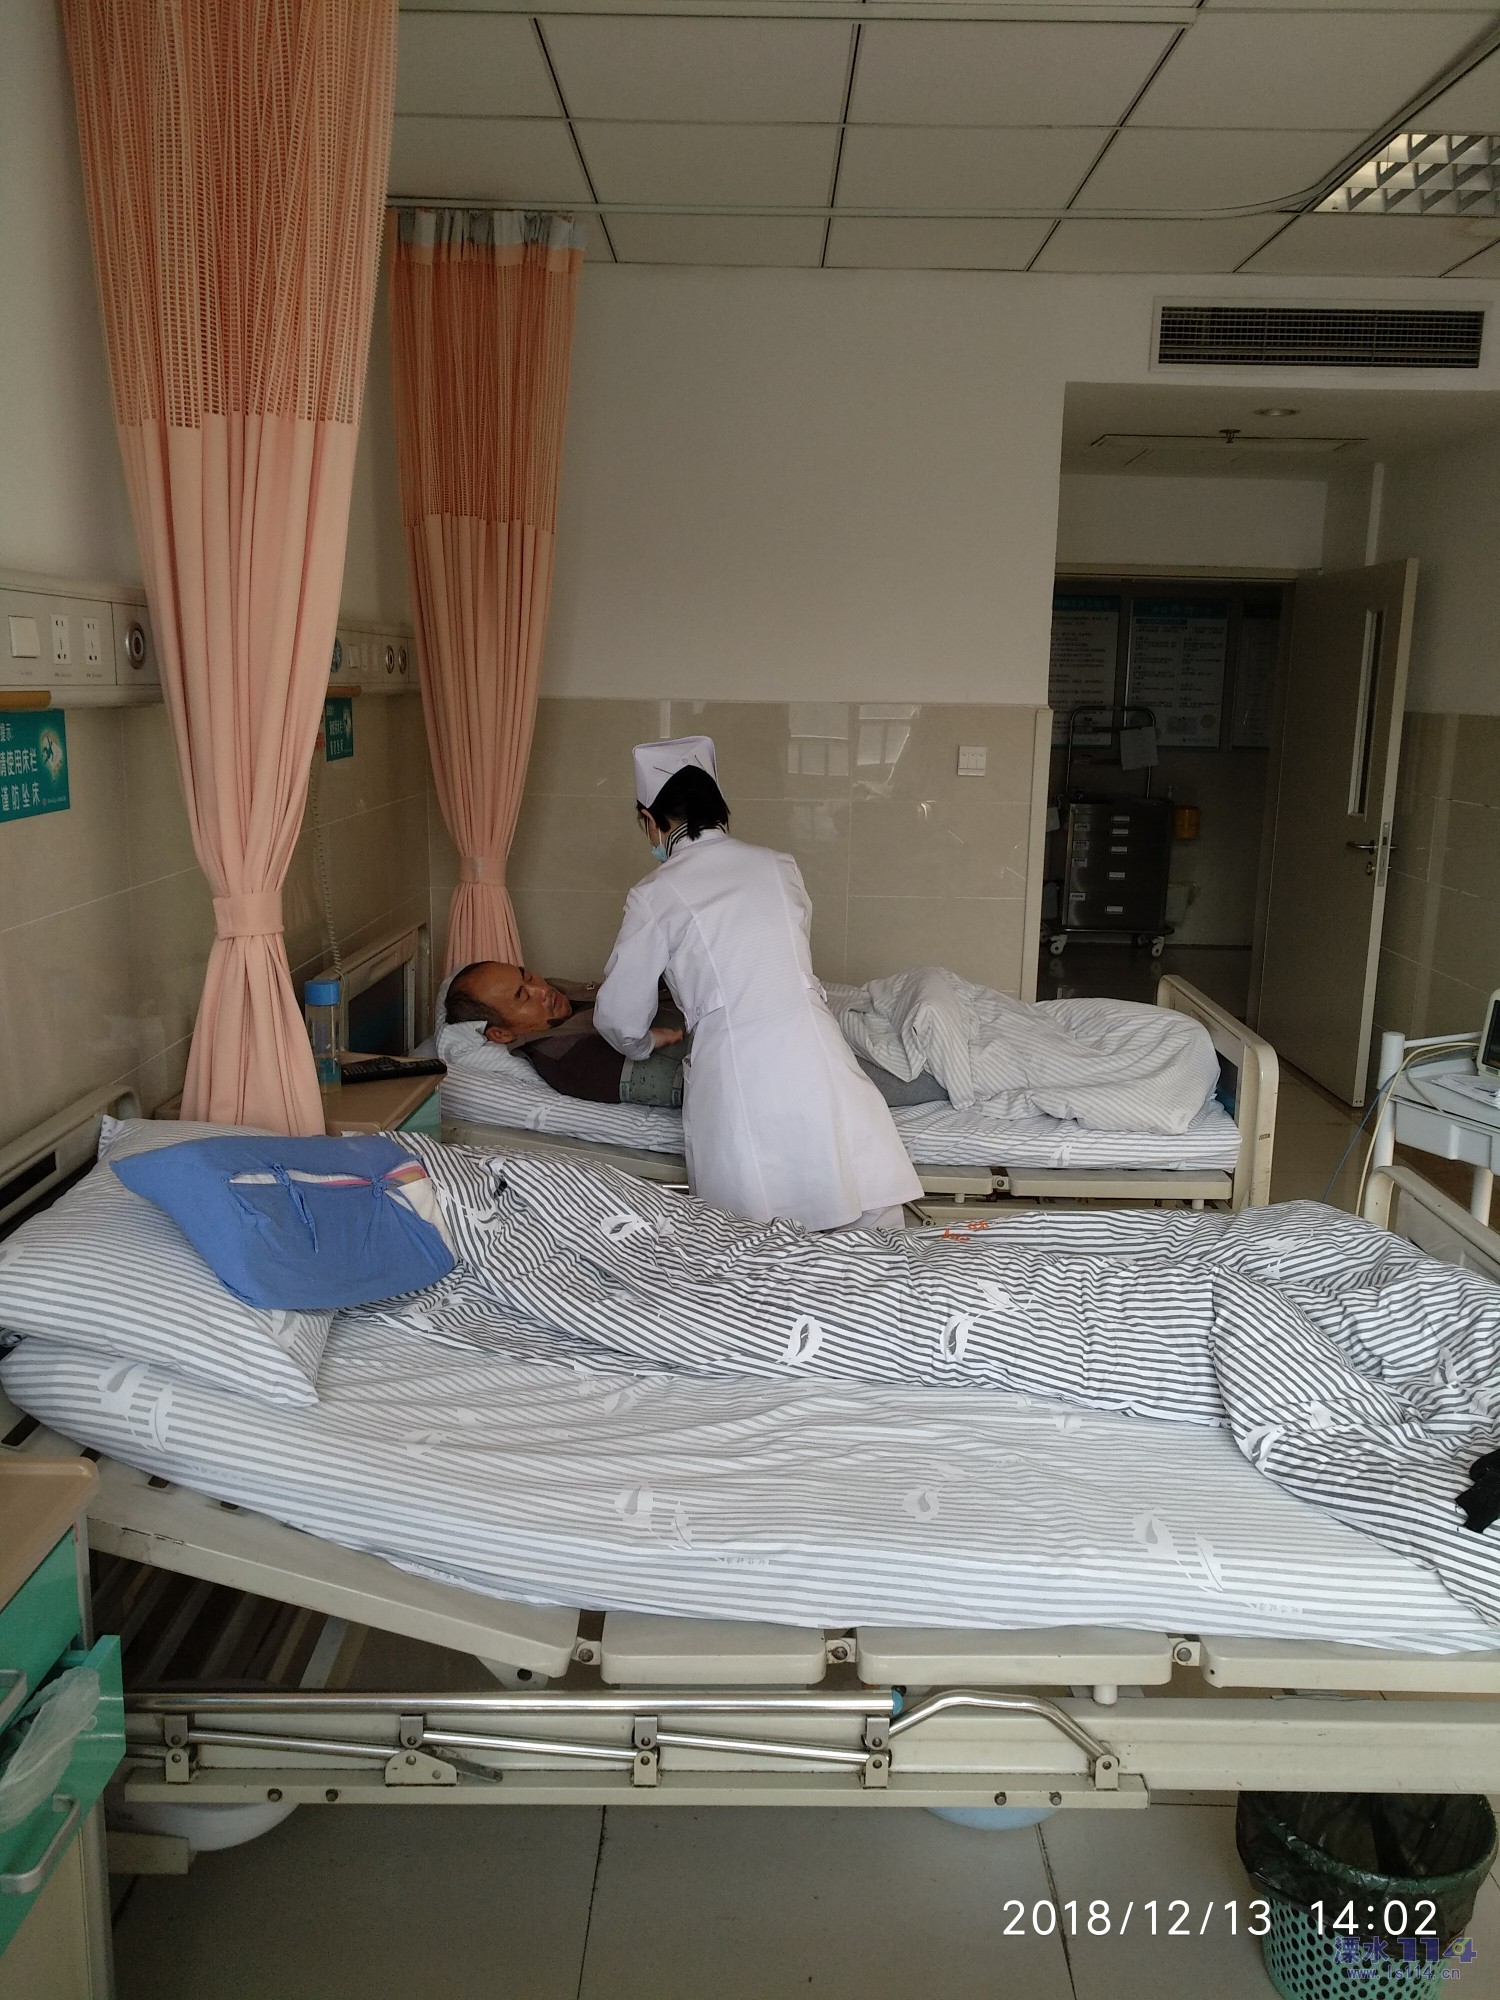 守护患者安全 太和县人民医院开展住院患者发生跌倒、坠床应急预案演练-工作动态-护理天地-太和县人民医院